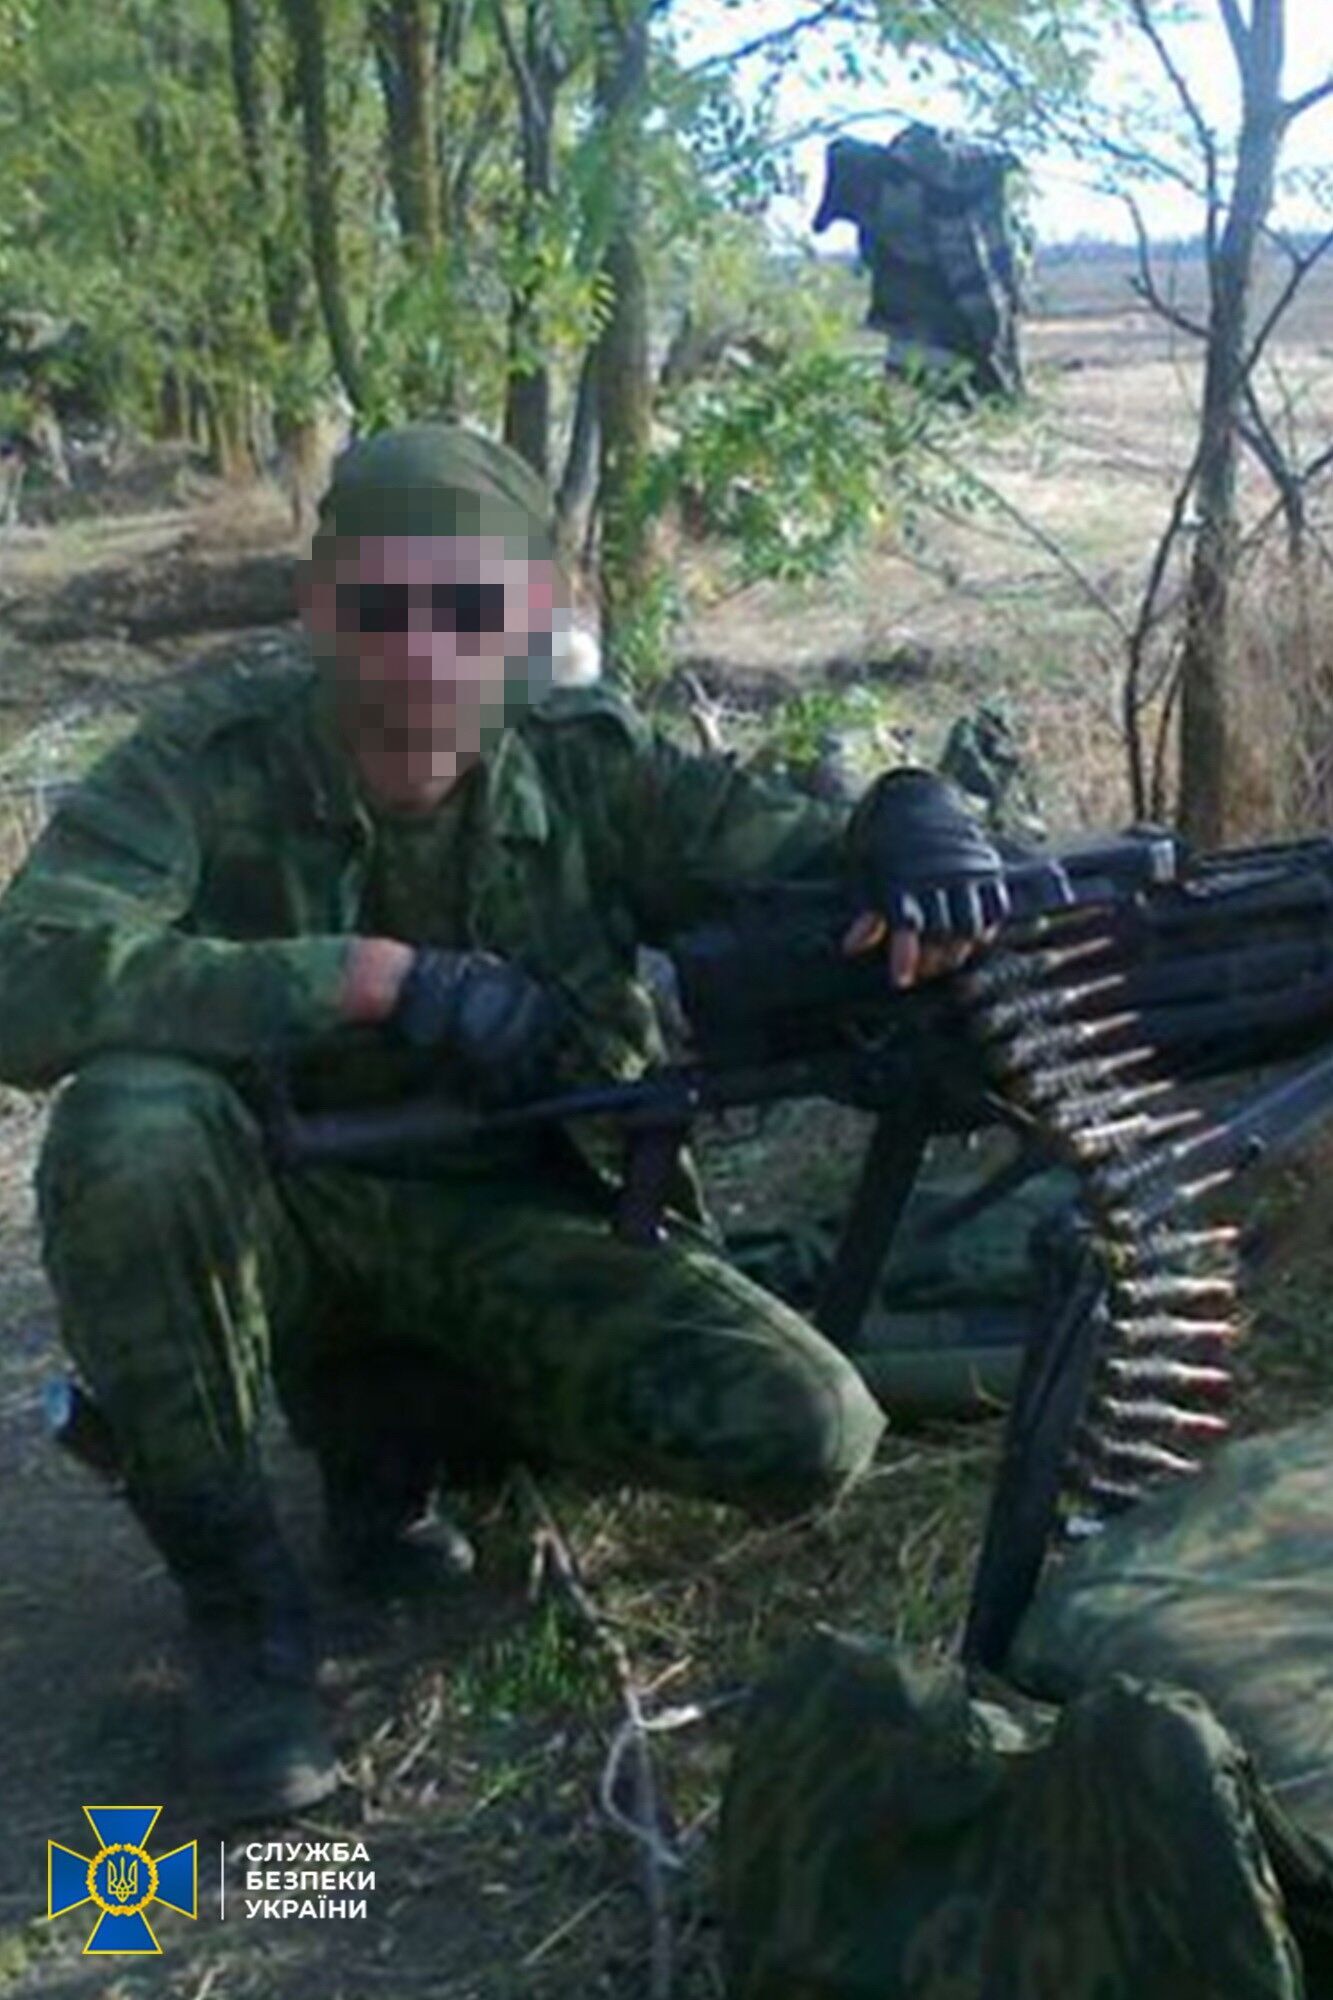 Украинец присоединился к террористам в 2014 году